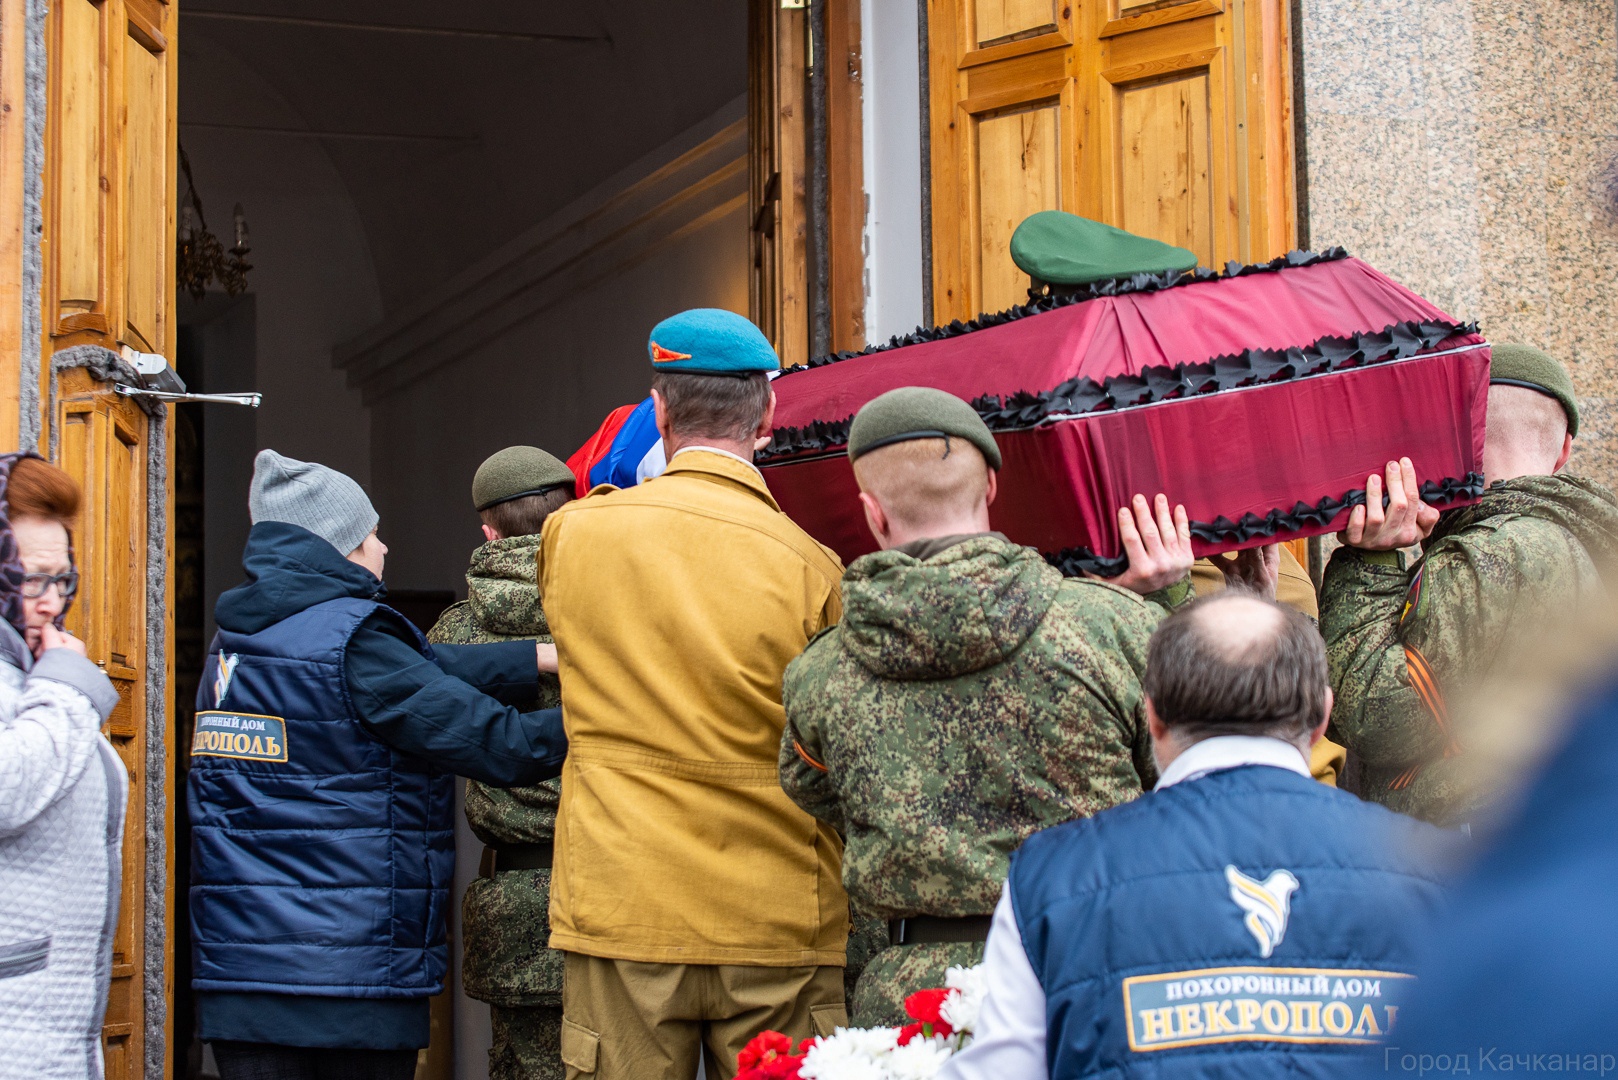 Похоронили погибшего на украине. Прощание с погибшим военнослужащим. Похороны военнослужащего.